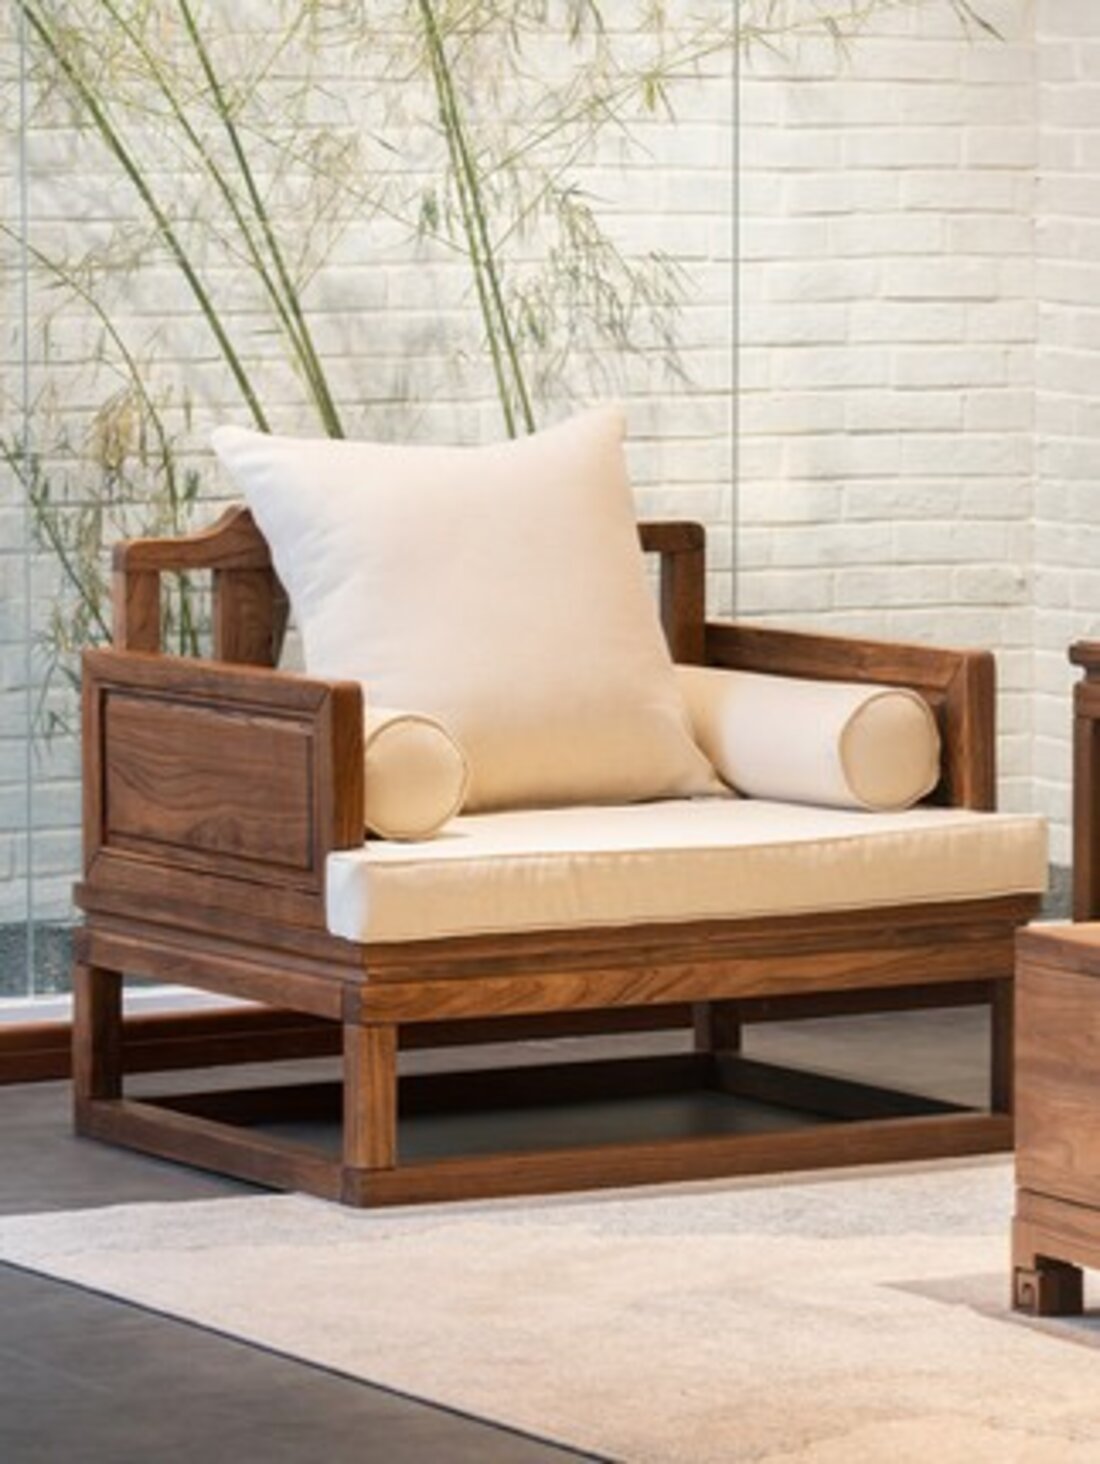 中式实木沙发图片-海量高清中式实木沙发图片大全 - 阿里巴巴